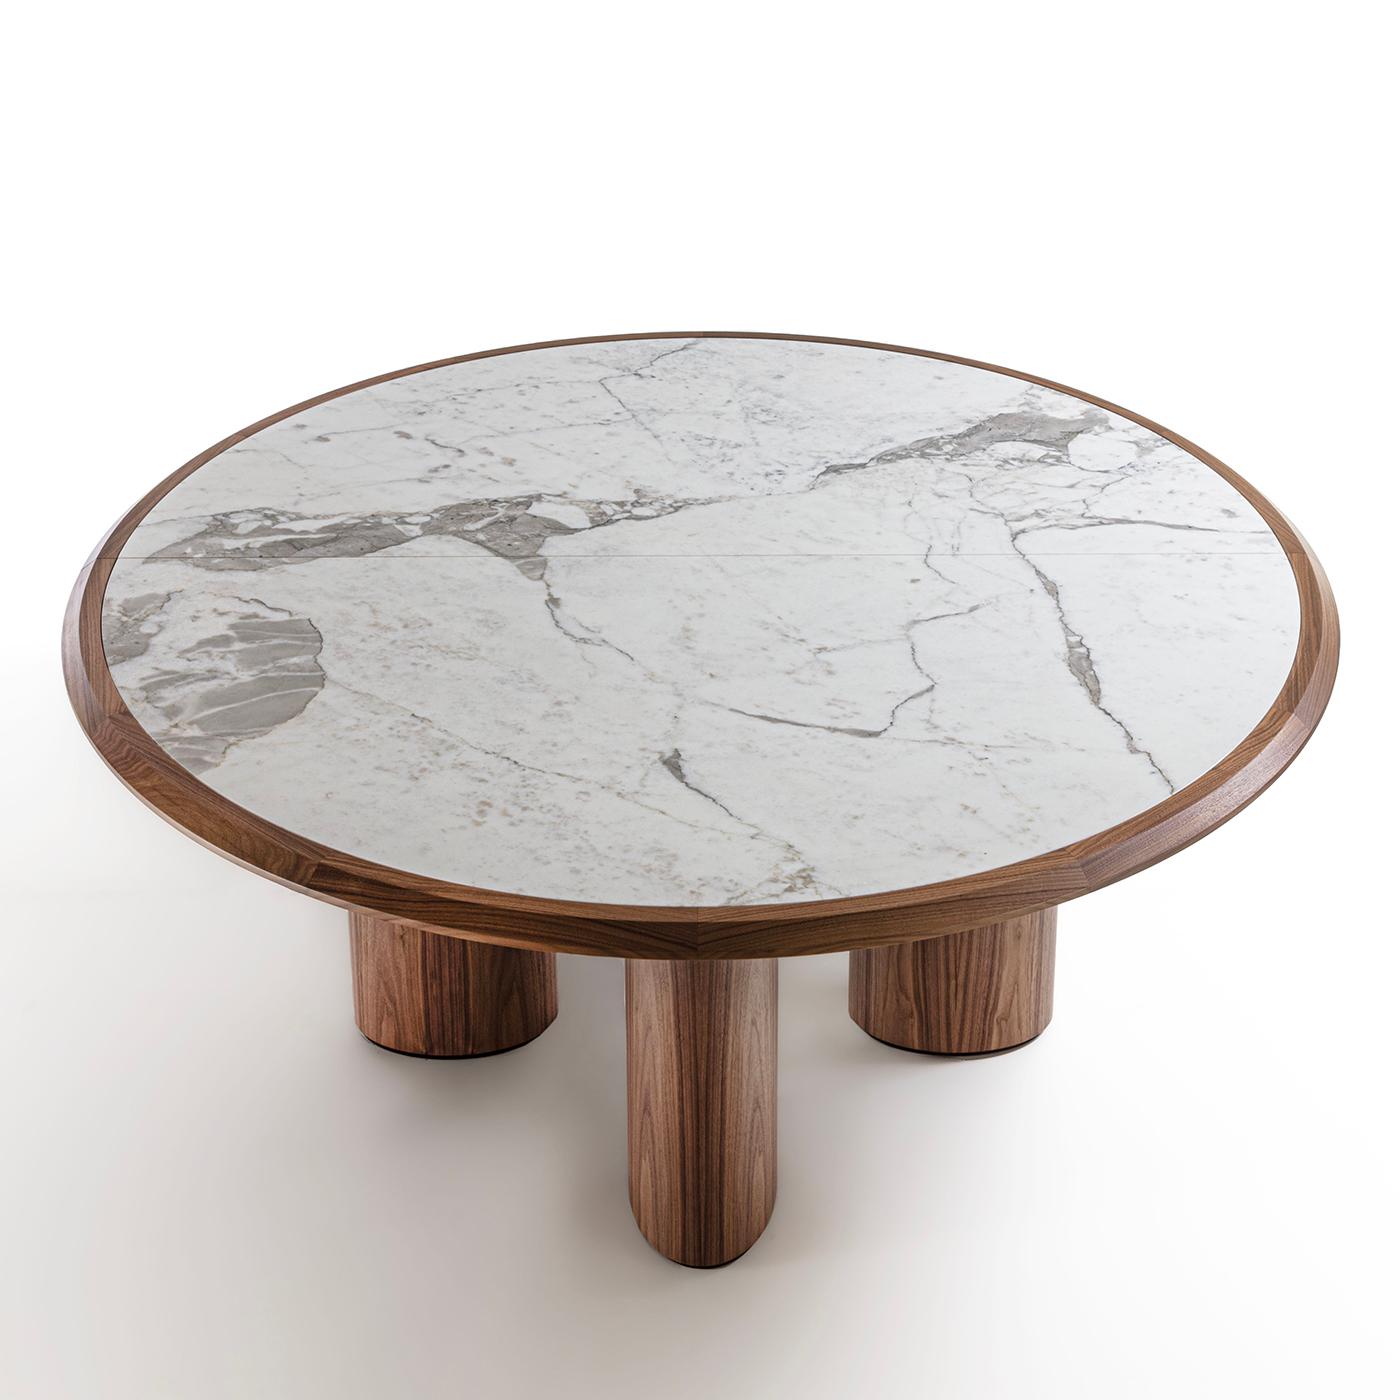 Geometrische Volumina, die durch die Verwendung herrlicher natürlicher MATERIALIEN einzigartig werden, kennzeichnen diesen herrlichen Tisch der modernen Inspiration. Majestätische Ergänzung eines Esszimmers mit einer Struktur aus massivem